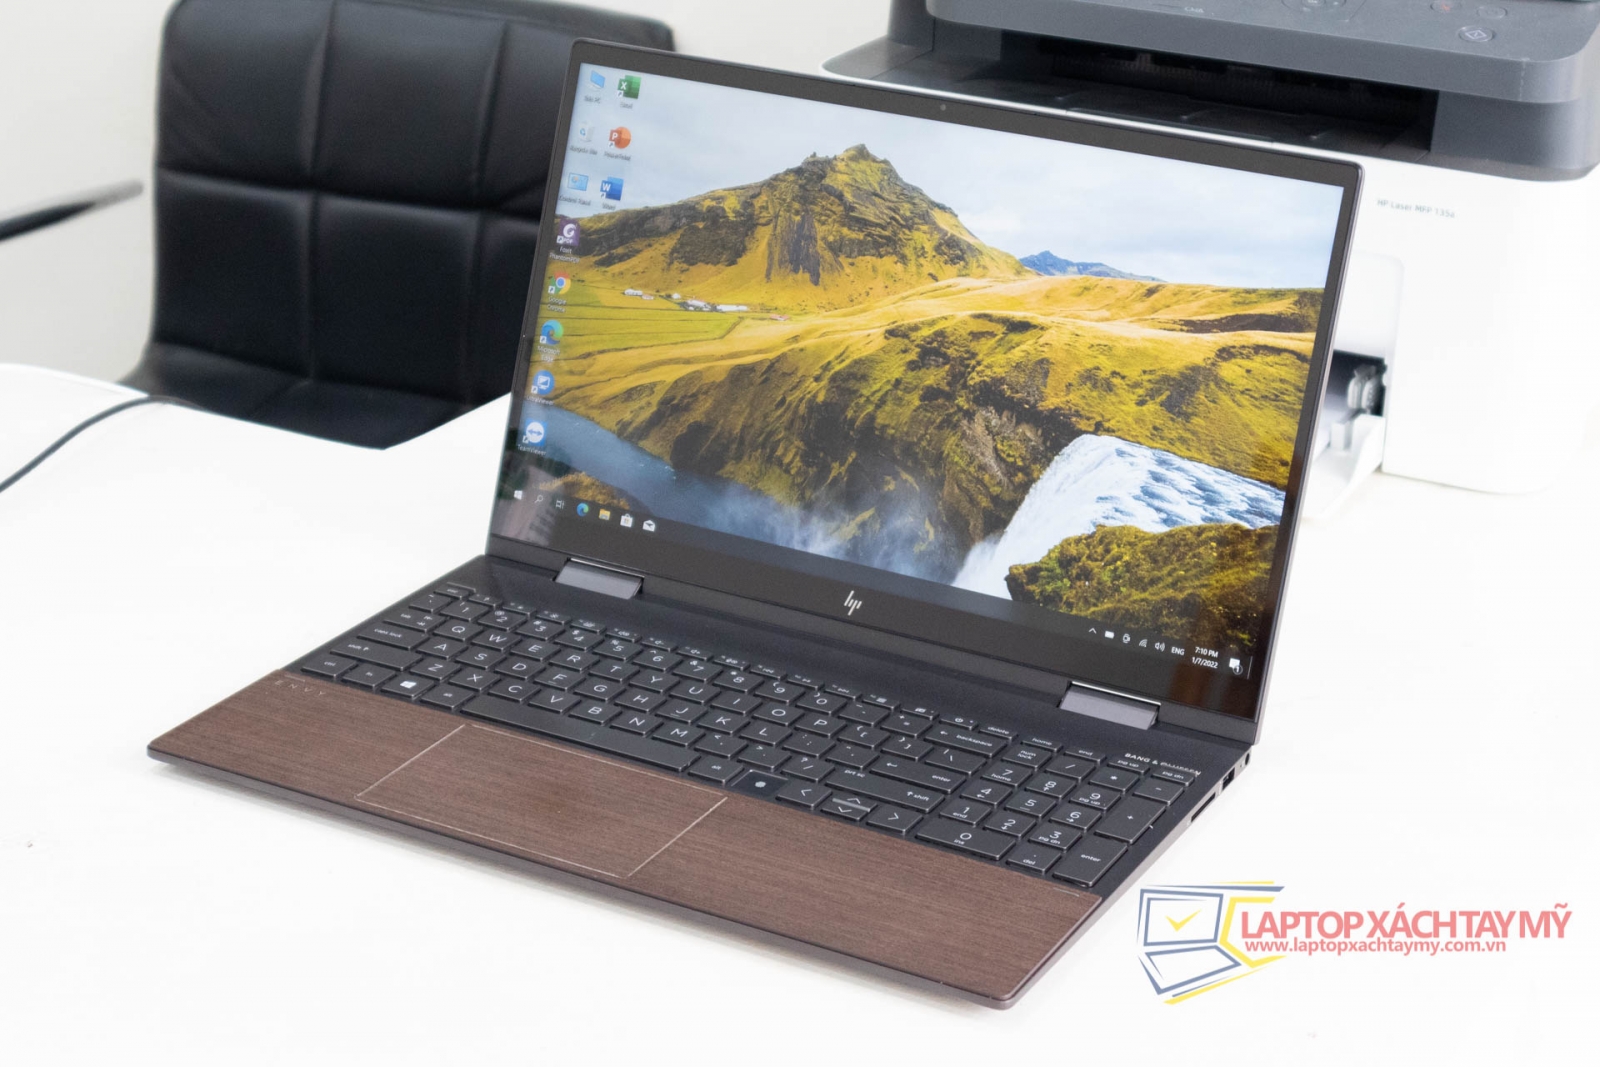 HP Envy Laptop 15 x360 Intel i5 1035G1, Ram 16G, SSD 512G, Cảm Ứng